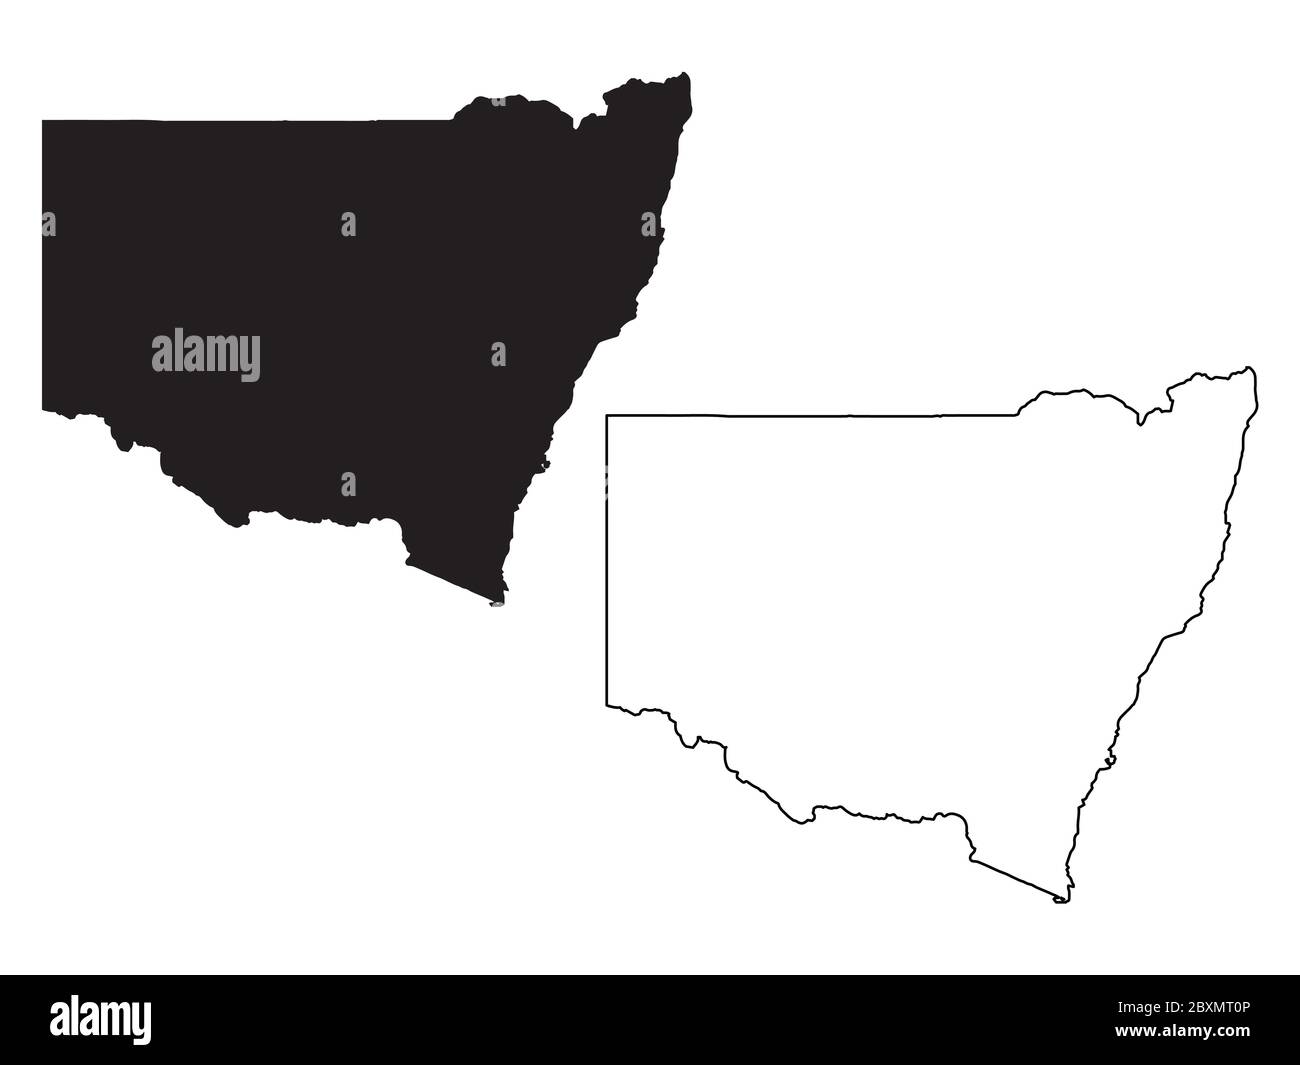 Mappa del nuovo Galles del Sud Australia. Mappe nere e a profilo. File vettoriale EPS. Illustrazione Vettoriale